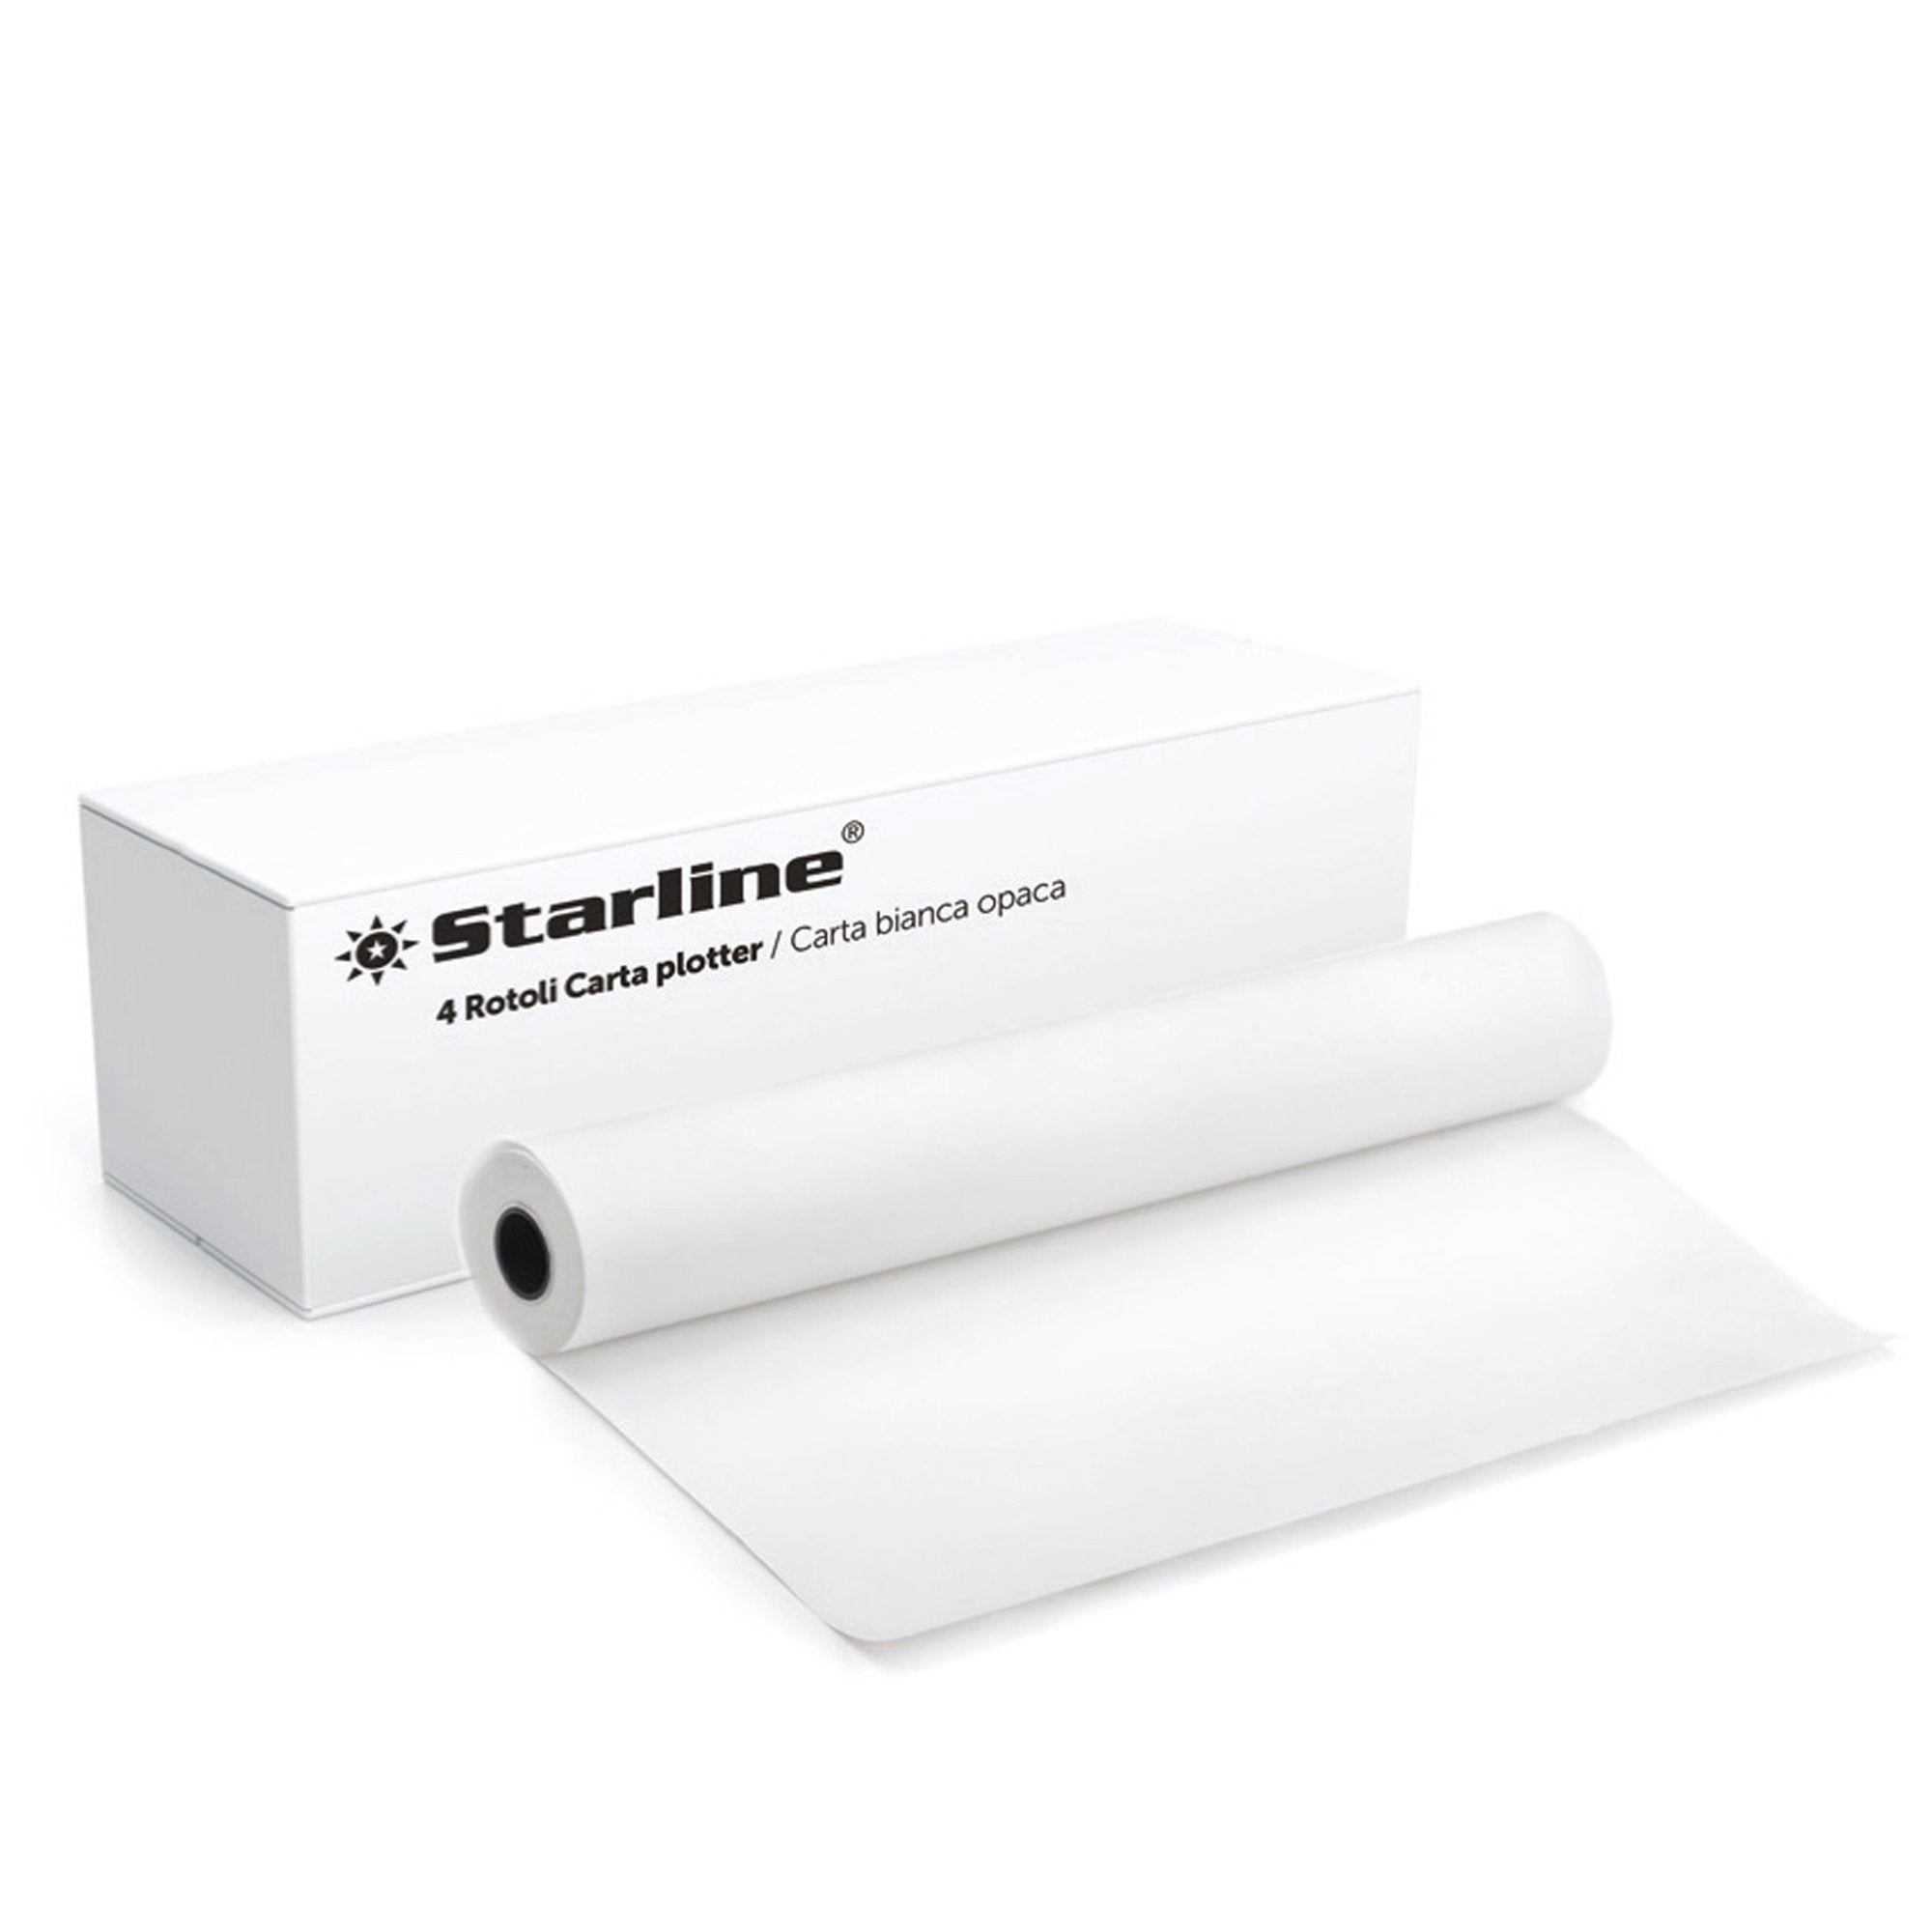 starline-carta-plotter-914mm-x-50m-80gr-inkjet